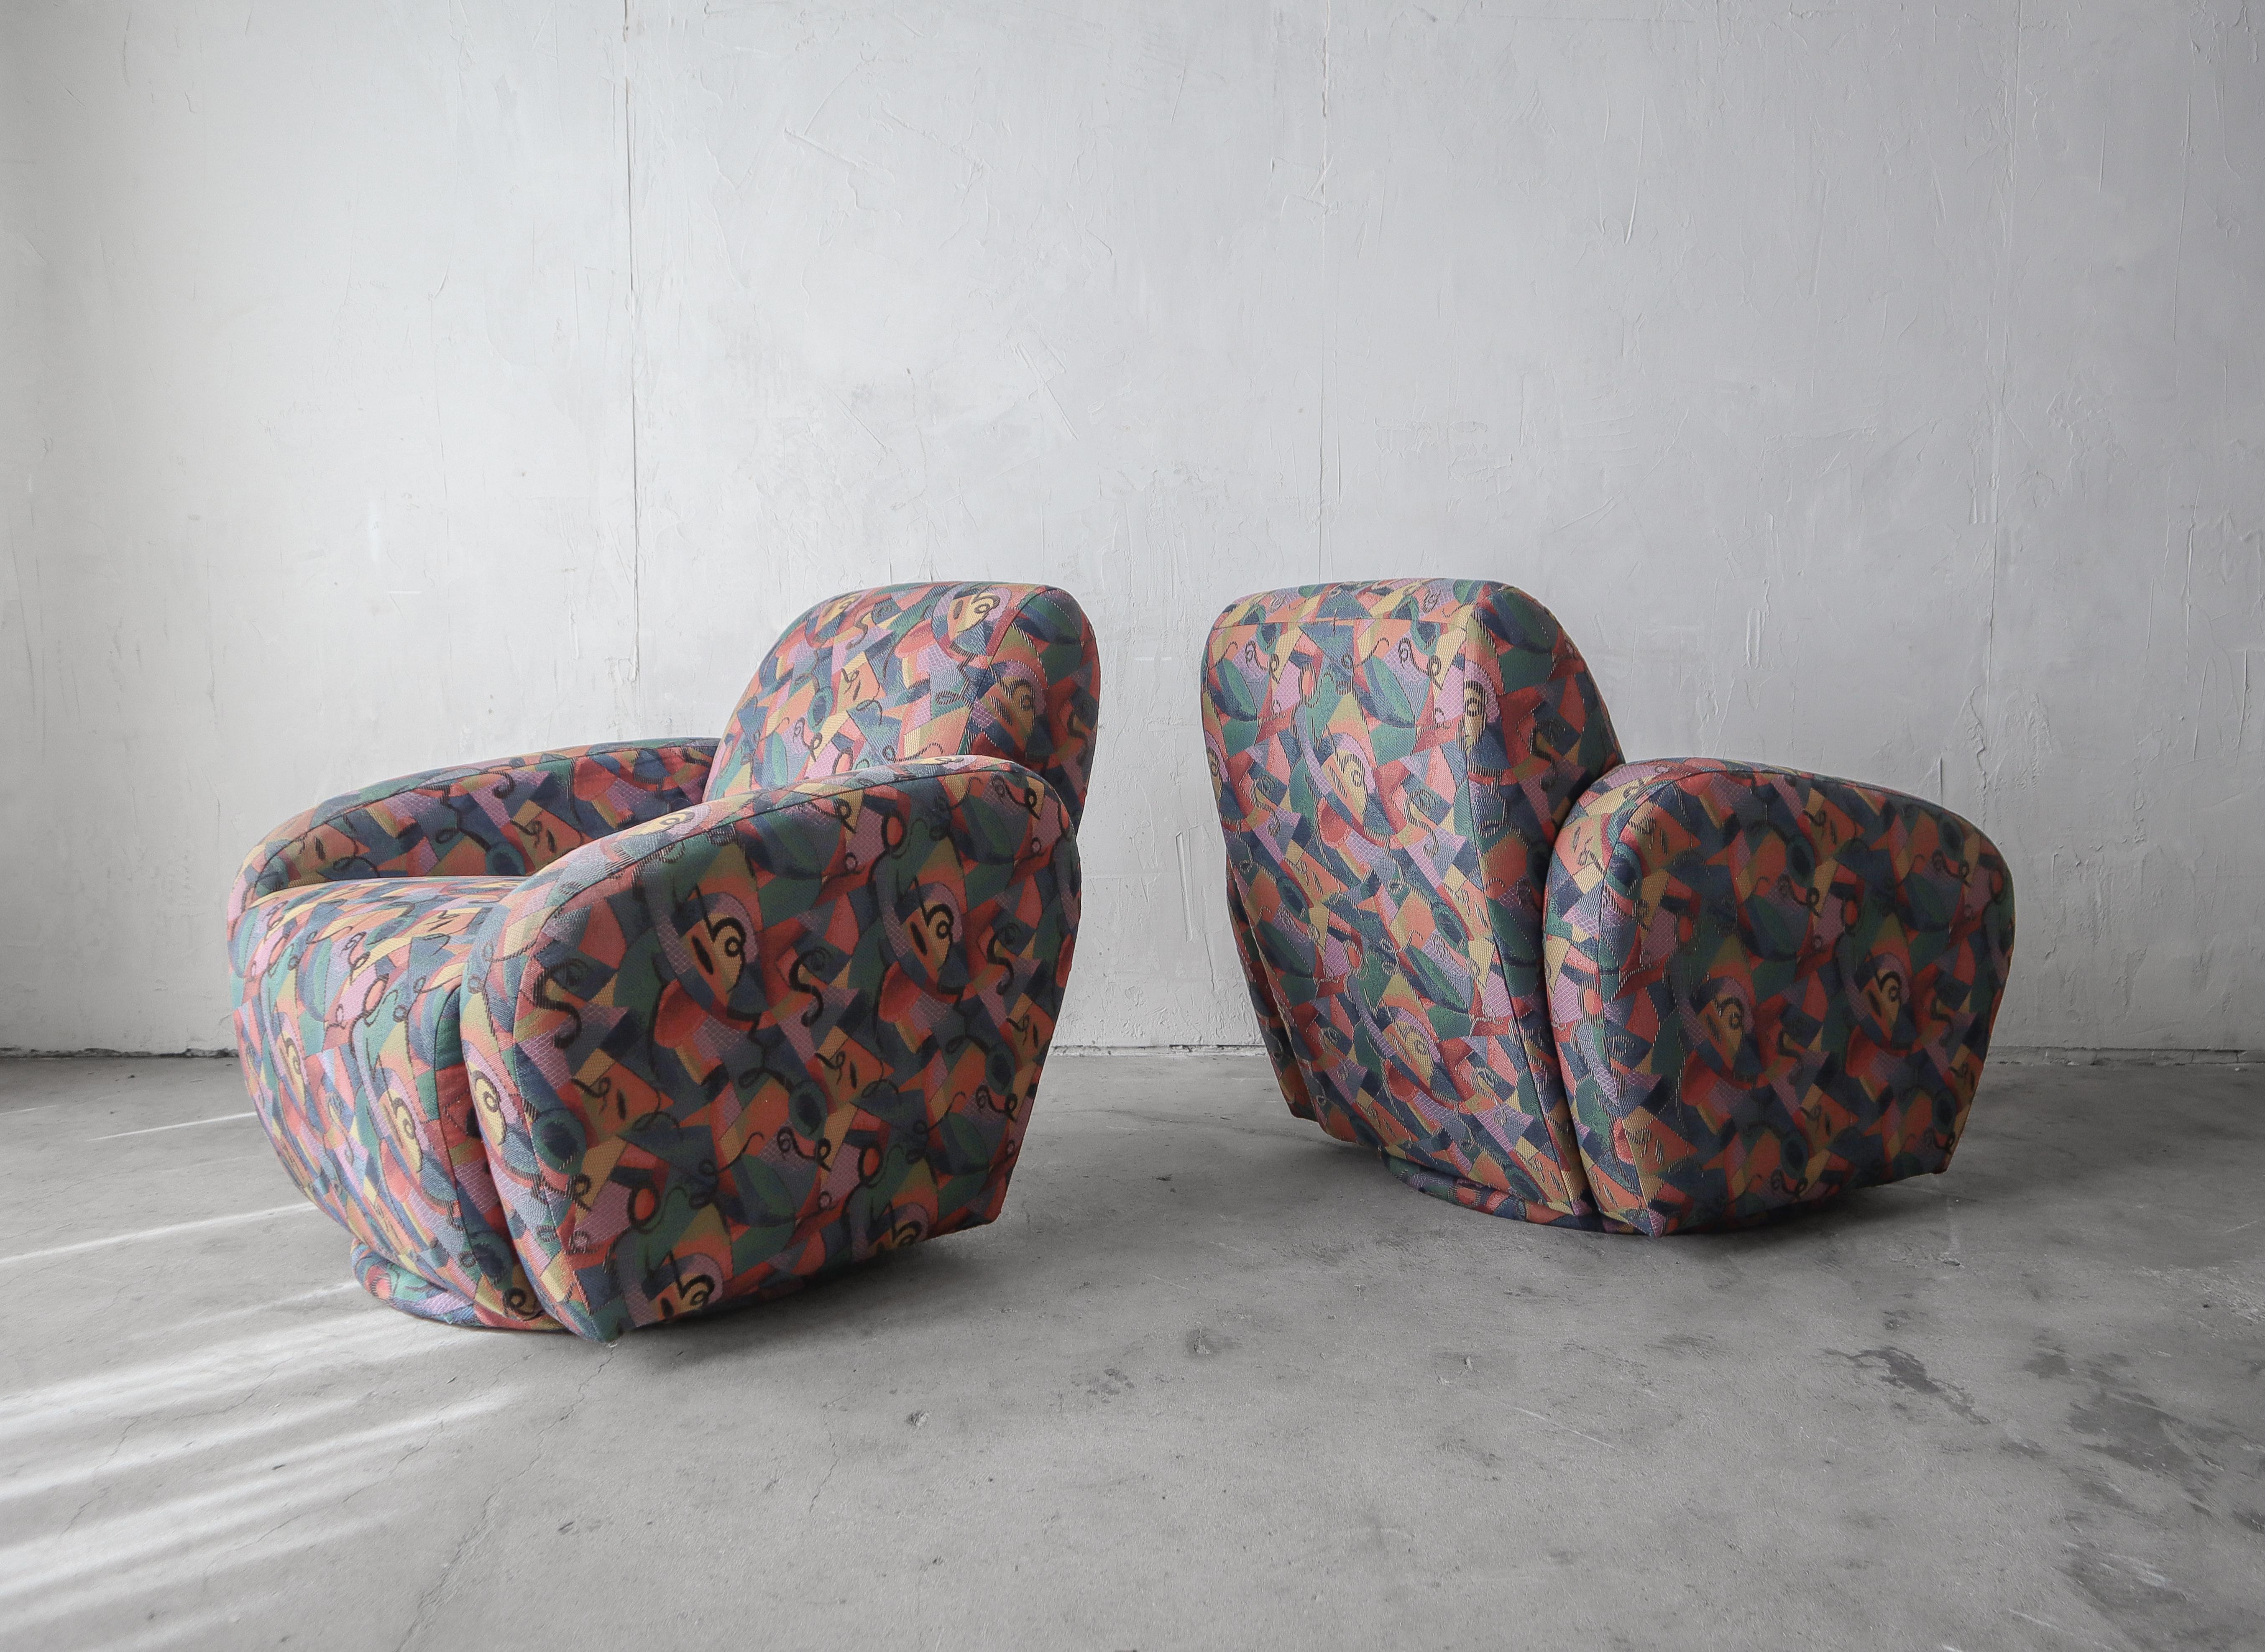 Ein schönes Paar original Post Modern Drehstühle von Preview Furniture.

Die Stühle sind alle original, so wie sie vorgefunden wurden.  Die Stühle sind strukturell gesund und der Stoff ist in gutem und gebrauchsfähigem Zustand, frei von Schäden,